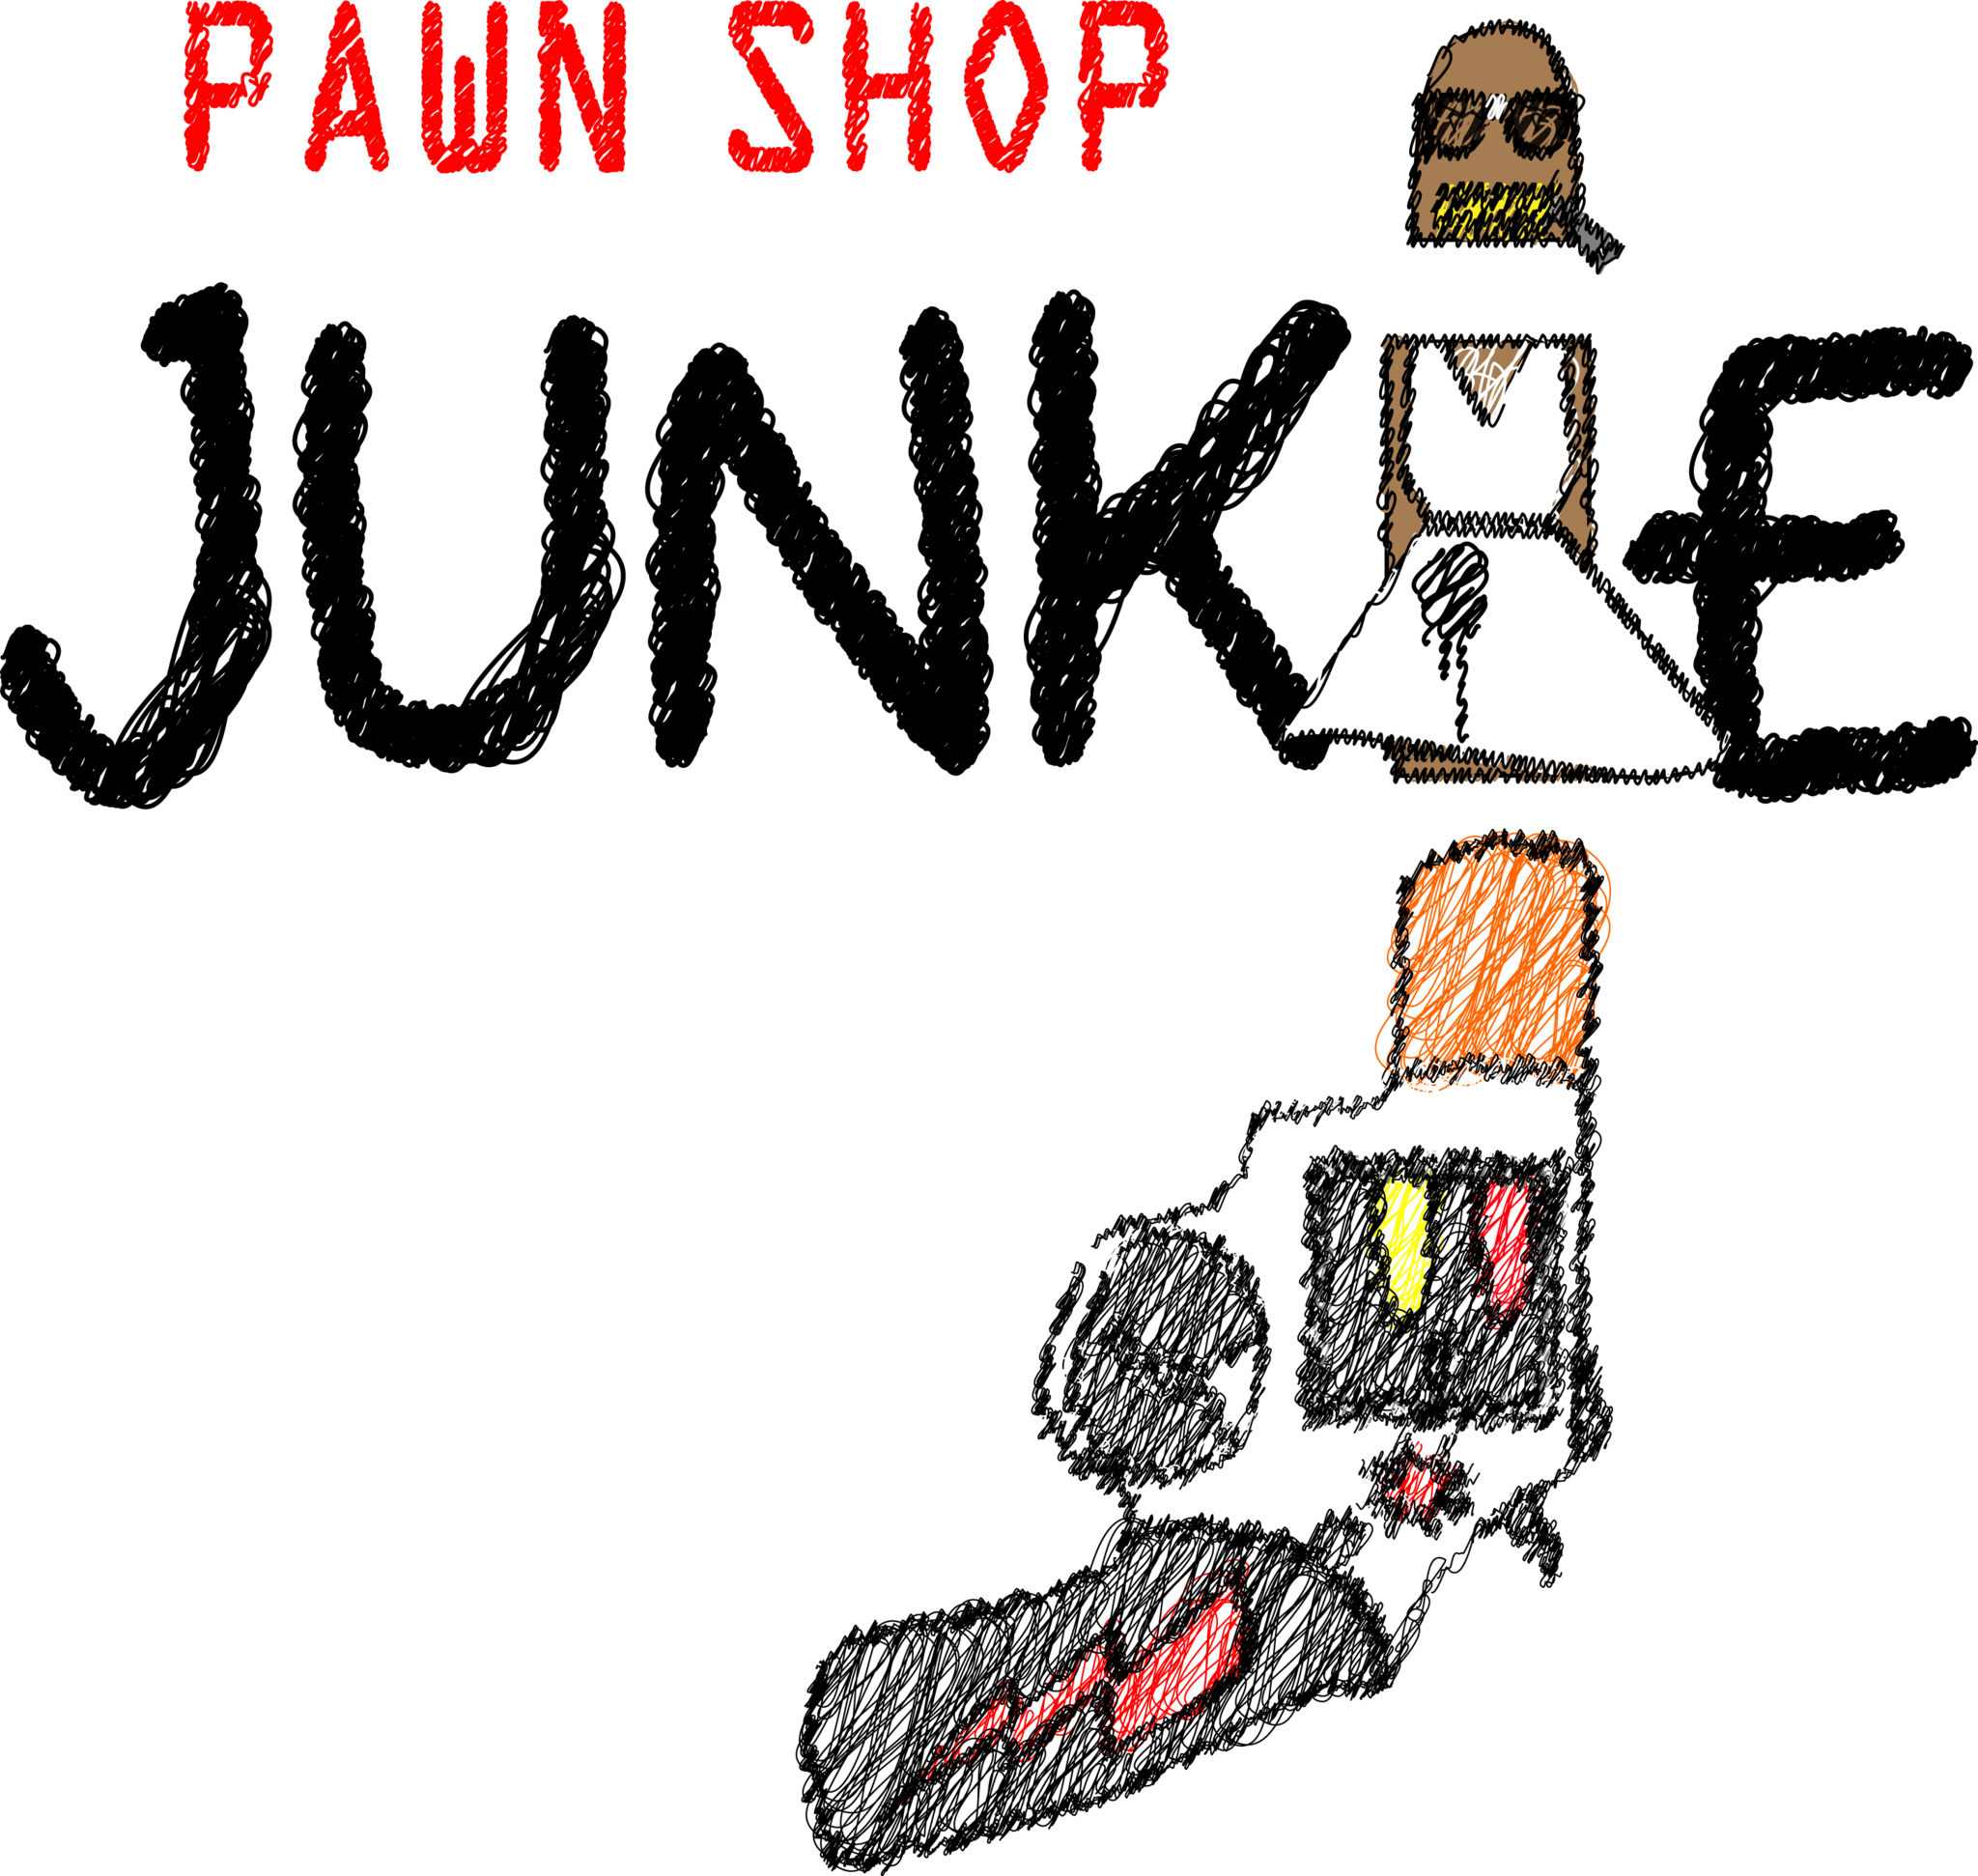 shop clipart pawn shop